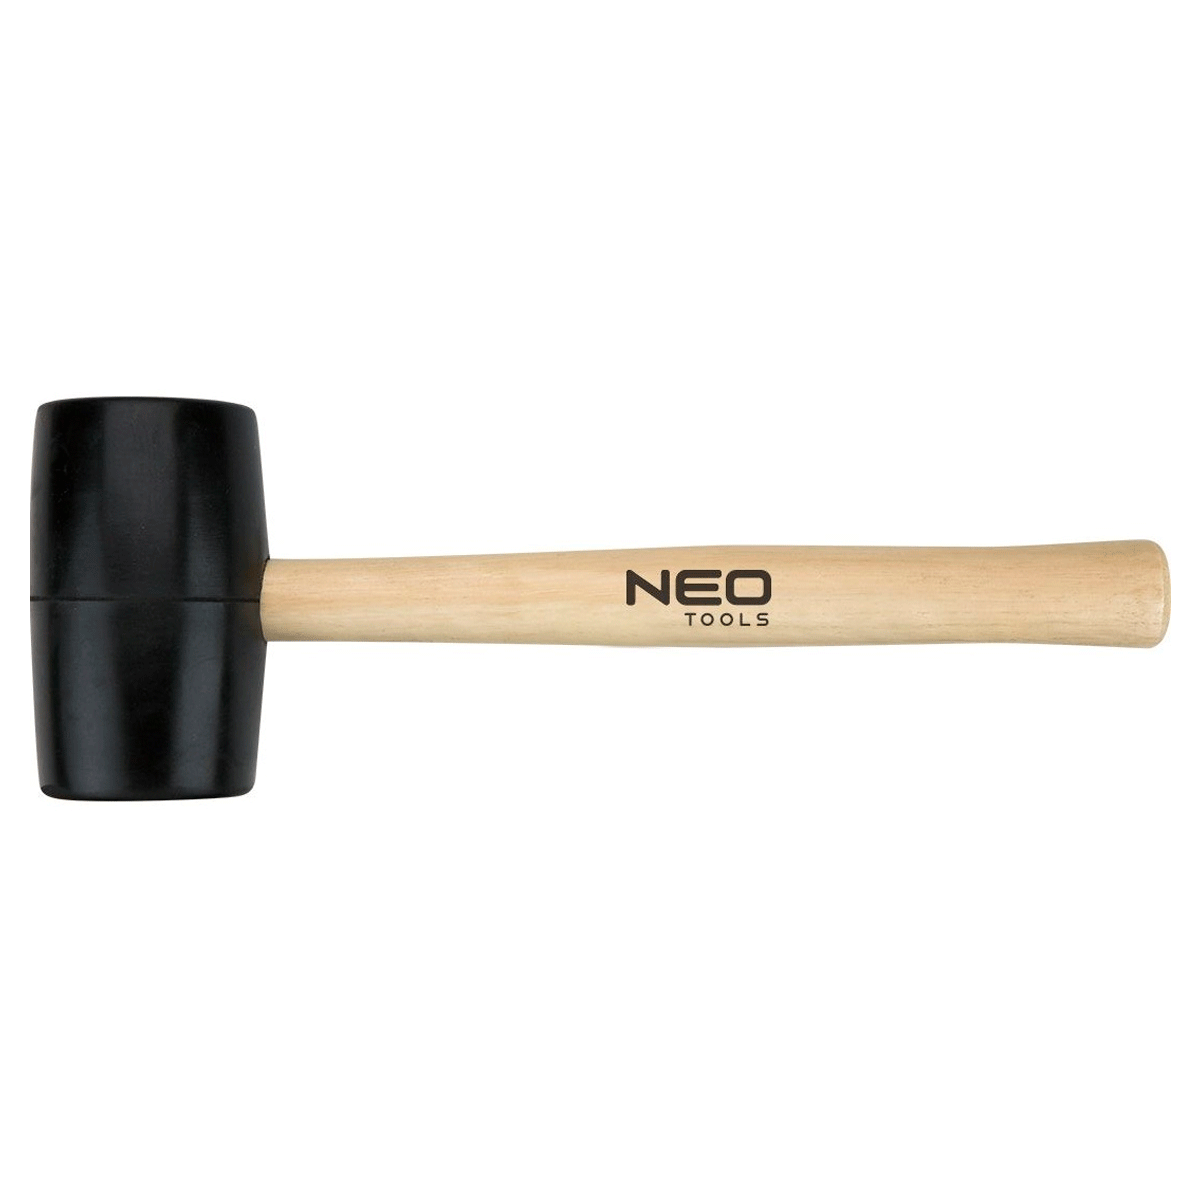 Киянка резиновая NEO 72 мм, 900 г, рукоятка деревянная (25-064)